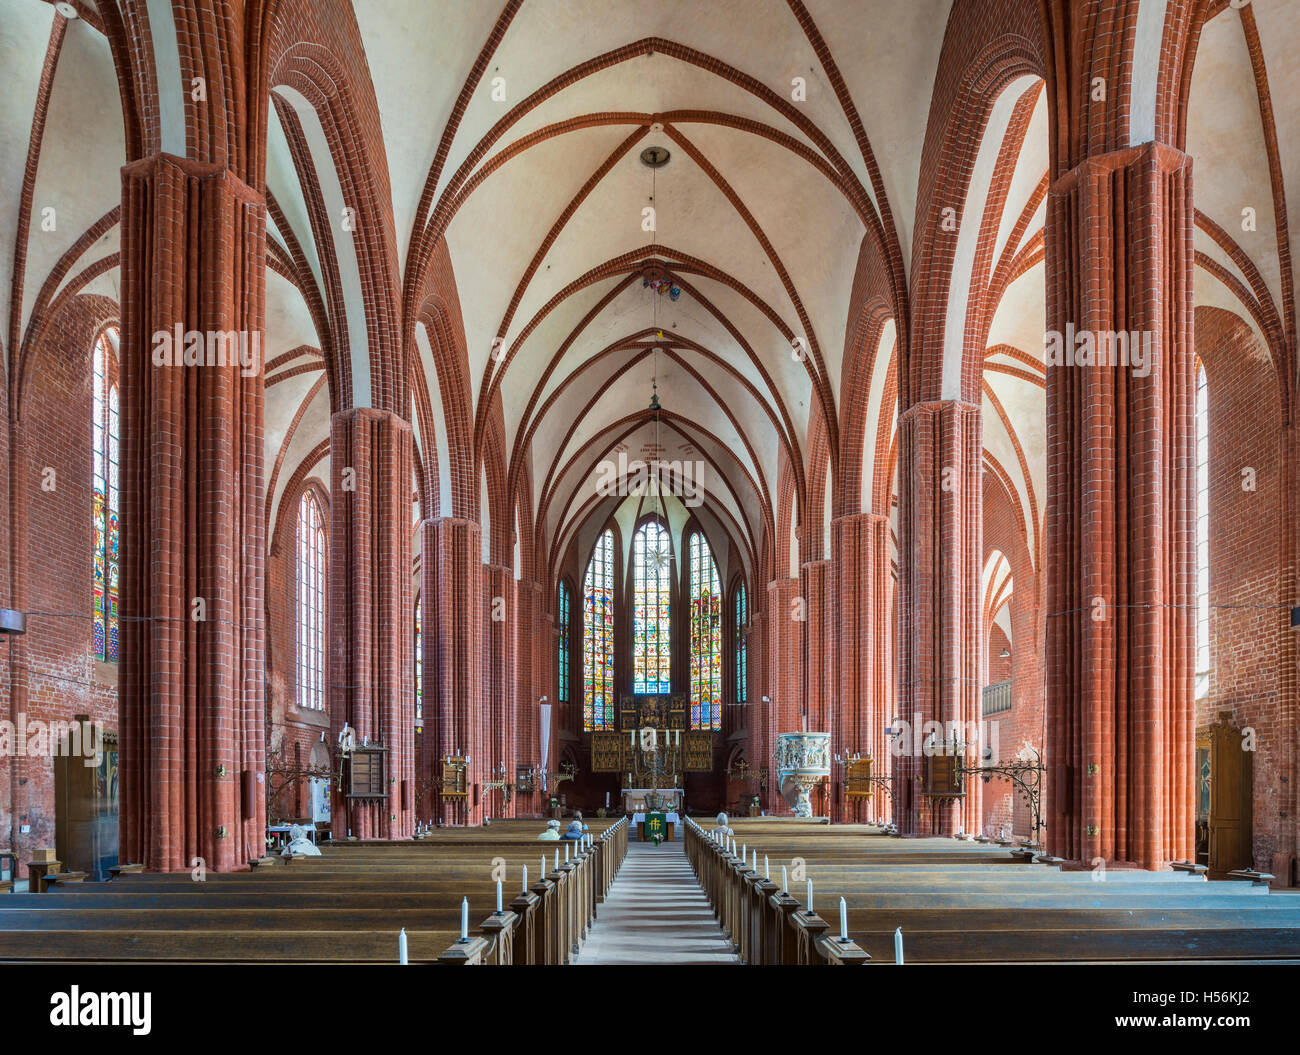 Gotische Pfarrkirche St. Johannes, Indoors, hanseatische Stadt Werben, Sachsen-Anhalt, Deutschland Stockfoto